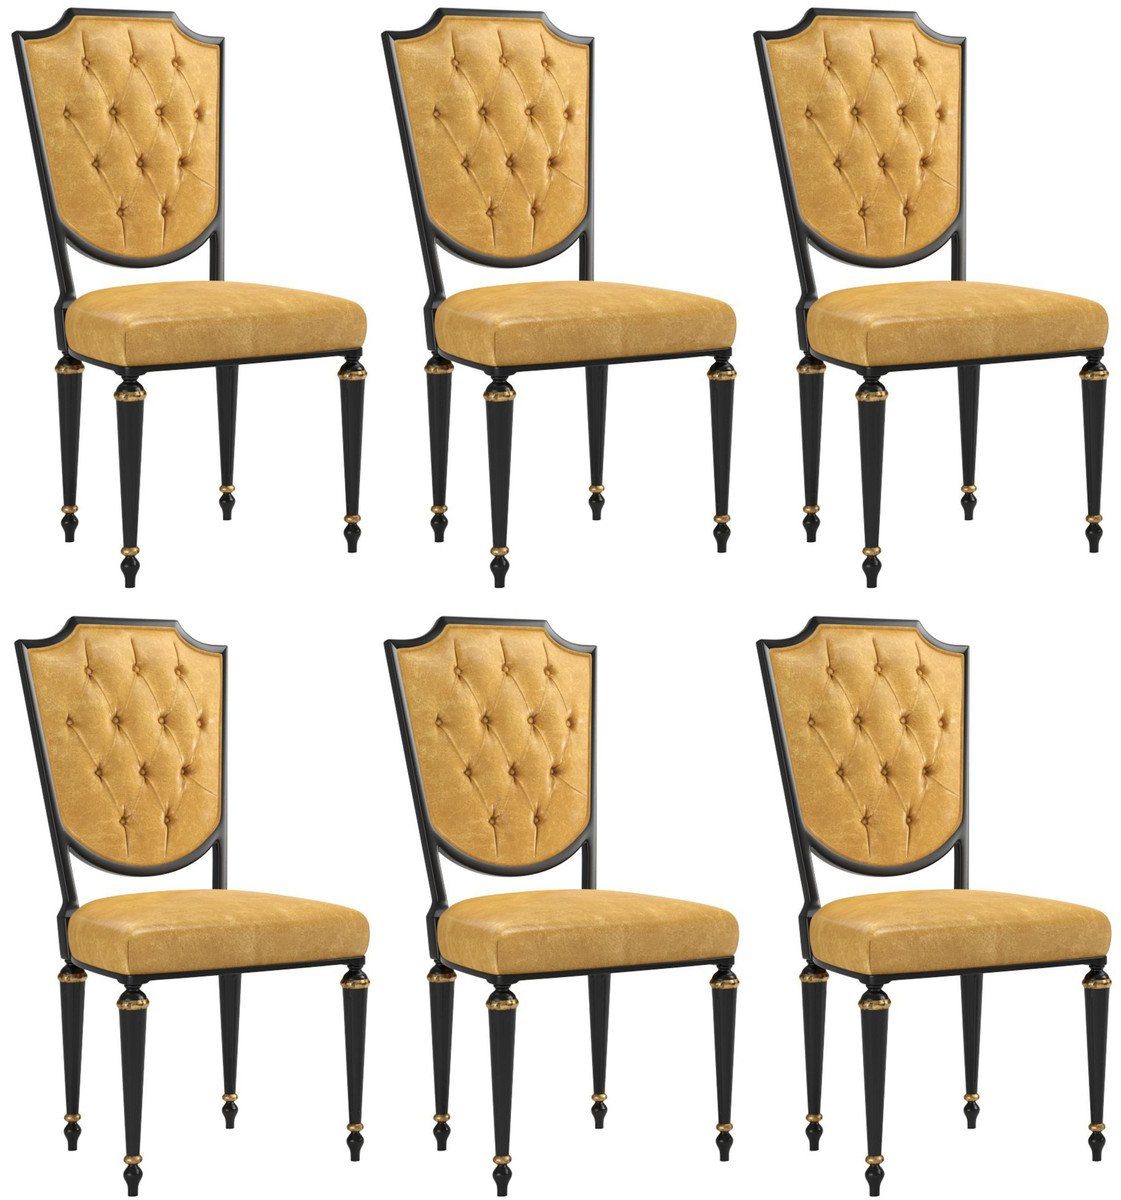 Casa Padrino Esszimmerstuhl Luxus Barock Esszimmer Stuhl Set Gold / Schwarz  / Antik Gold 50 x 50 x H. 105 cm - Edle Küchen Stühle mit hochwertigem  Leder - Barock Stühle 6er Set - Esszimmer Möbel